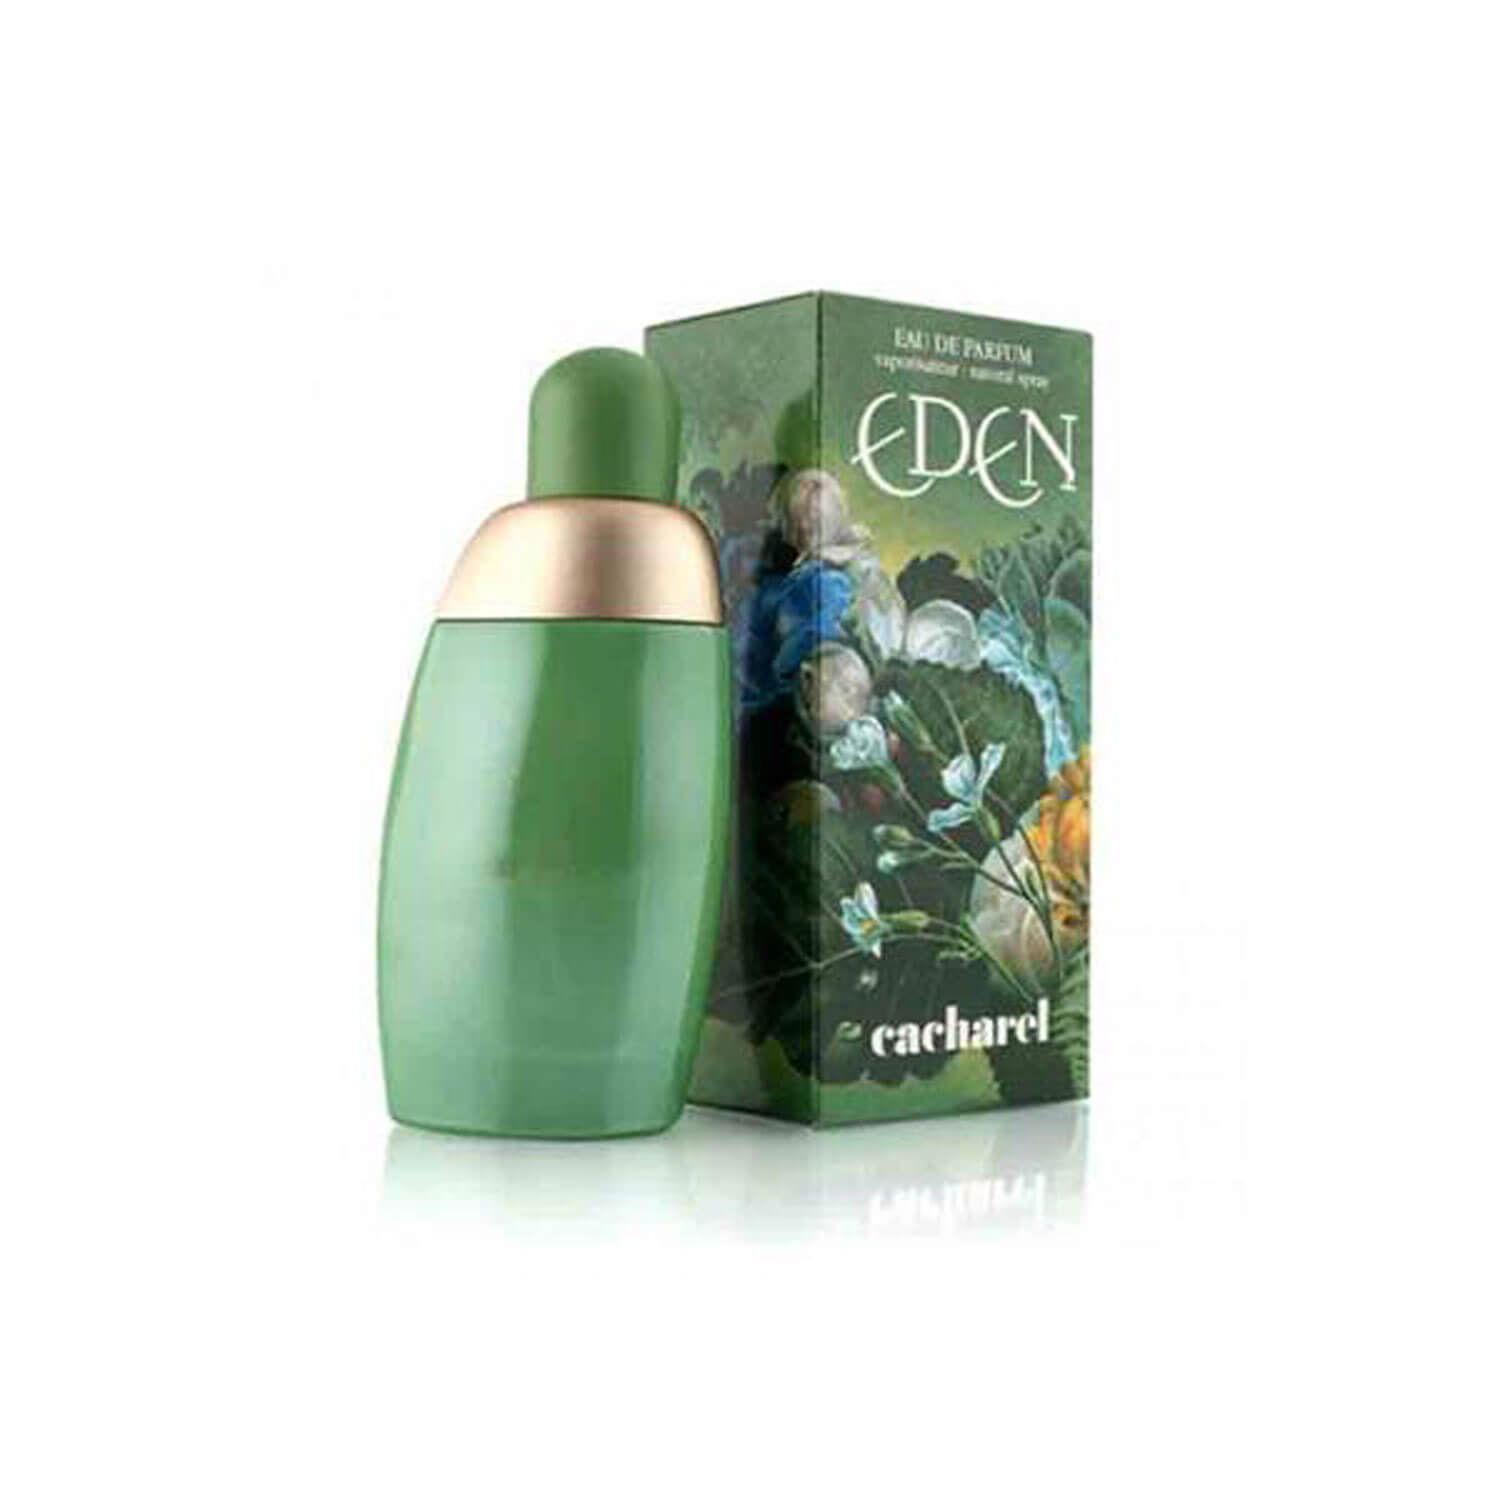 Cacharel Eden Eau De Parfum - 30ml 1 Shaws Department Stores